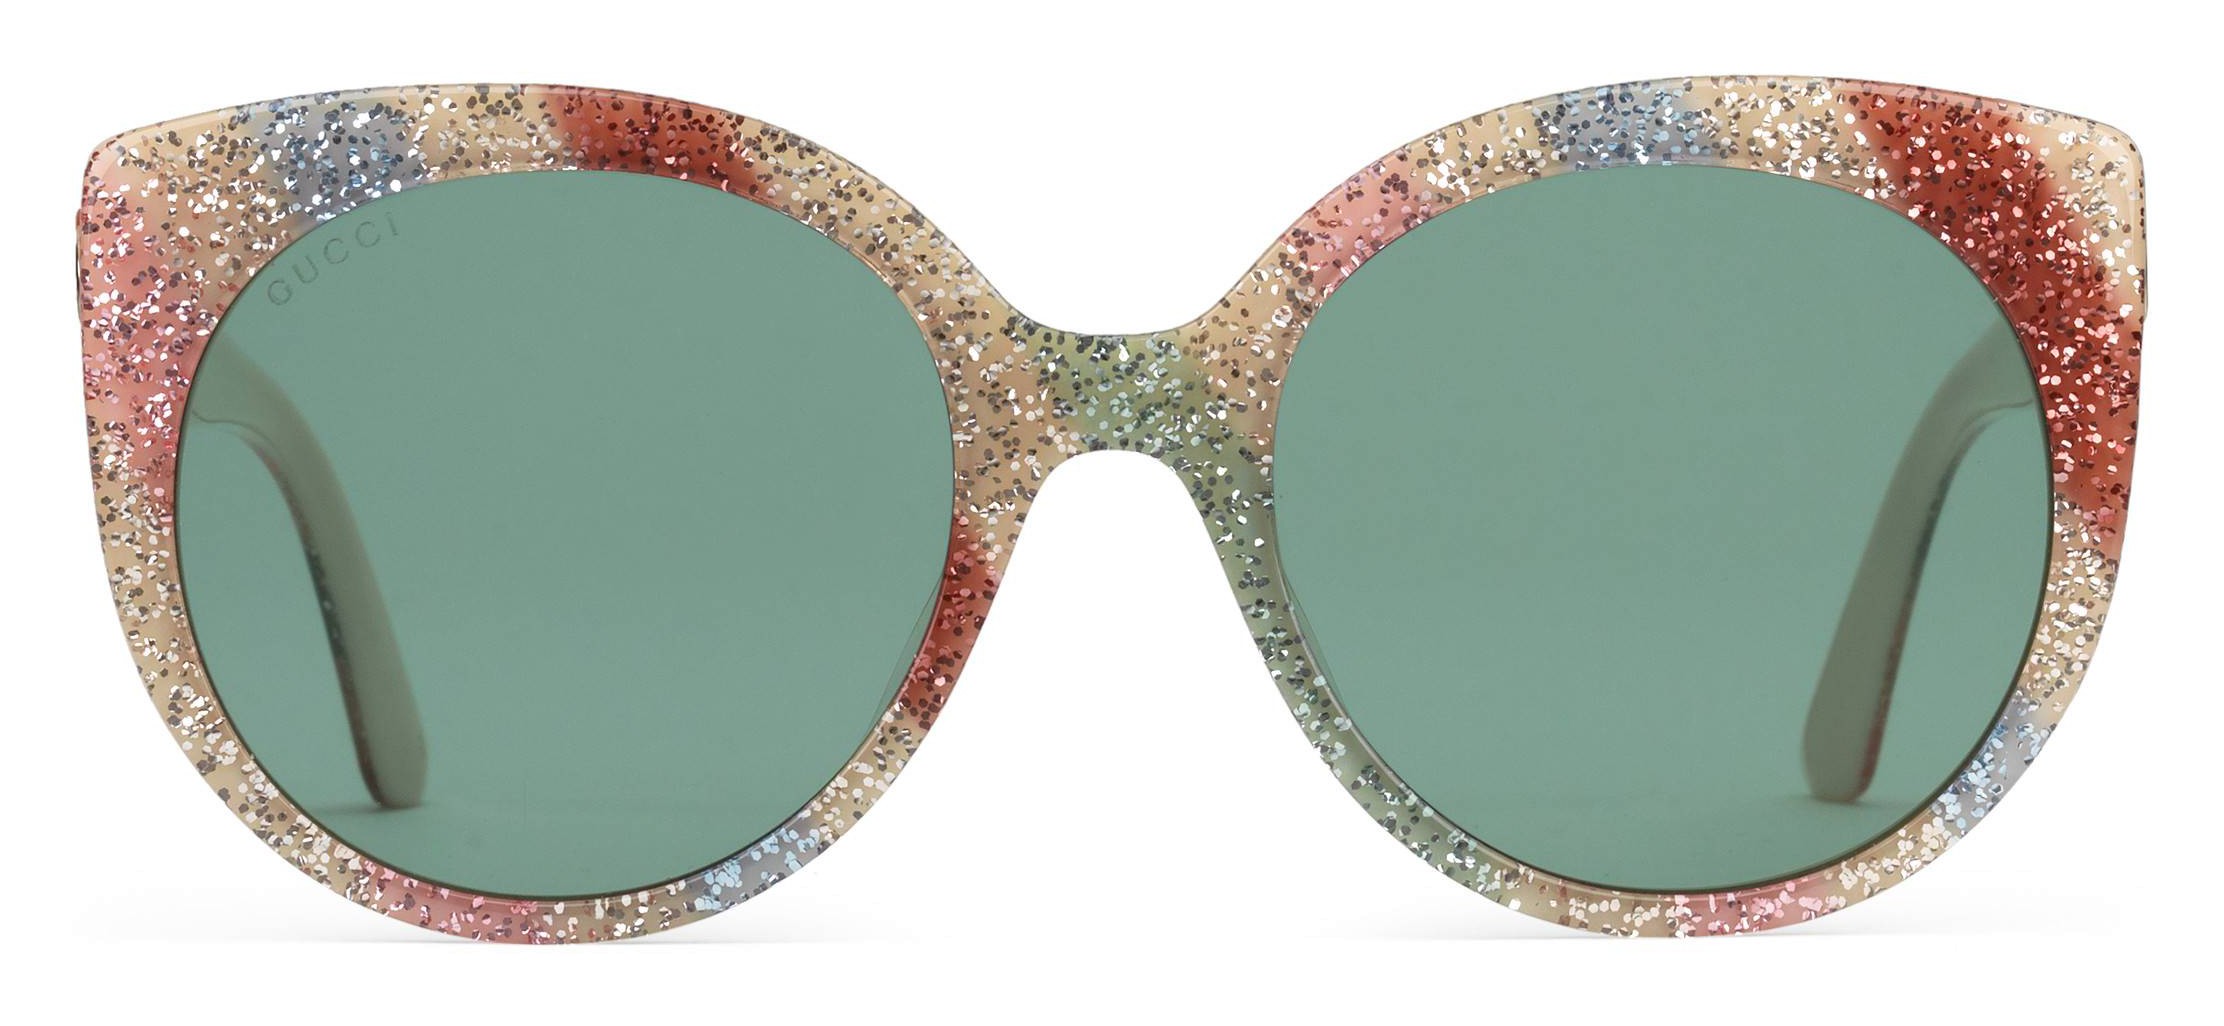 gucci sunglasses with glitter